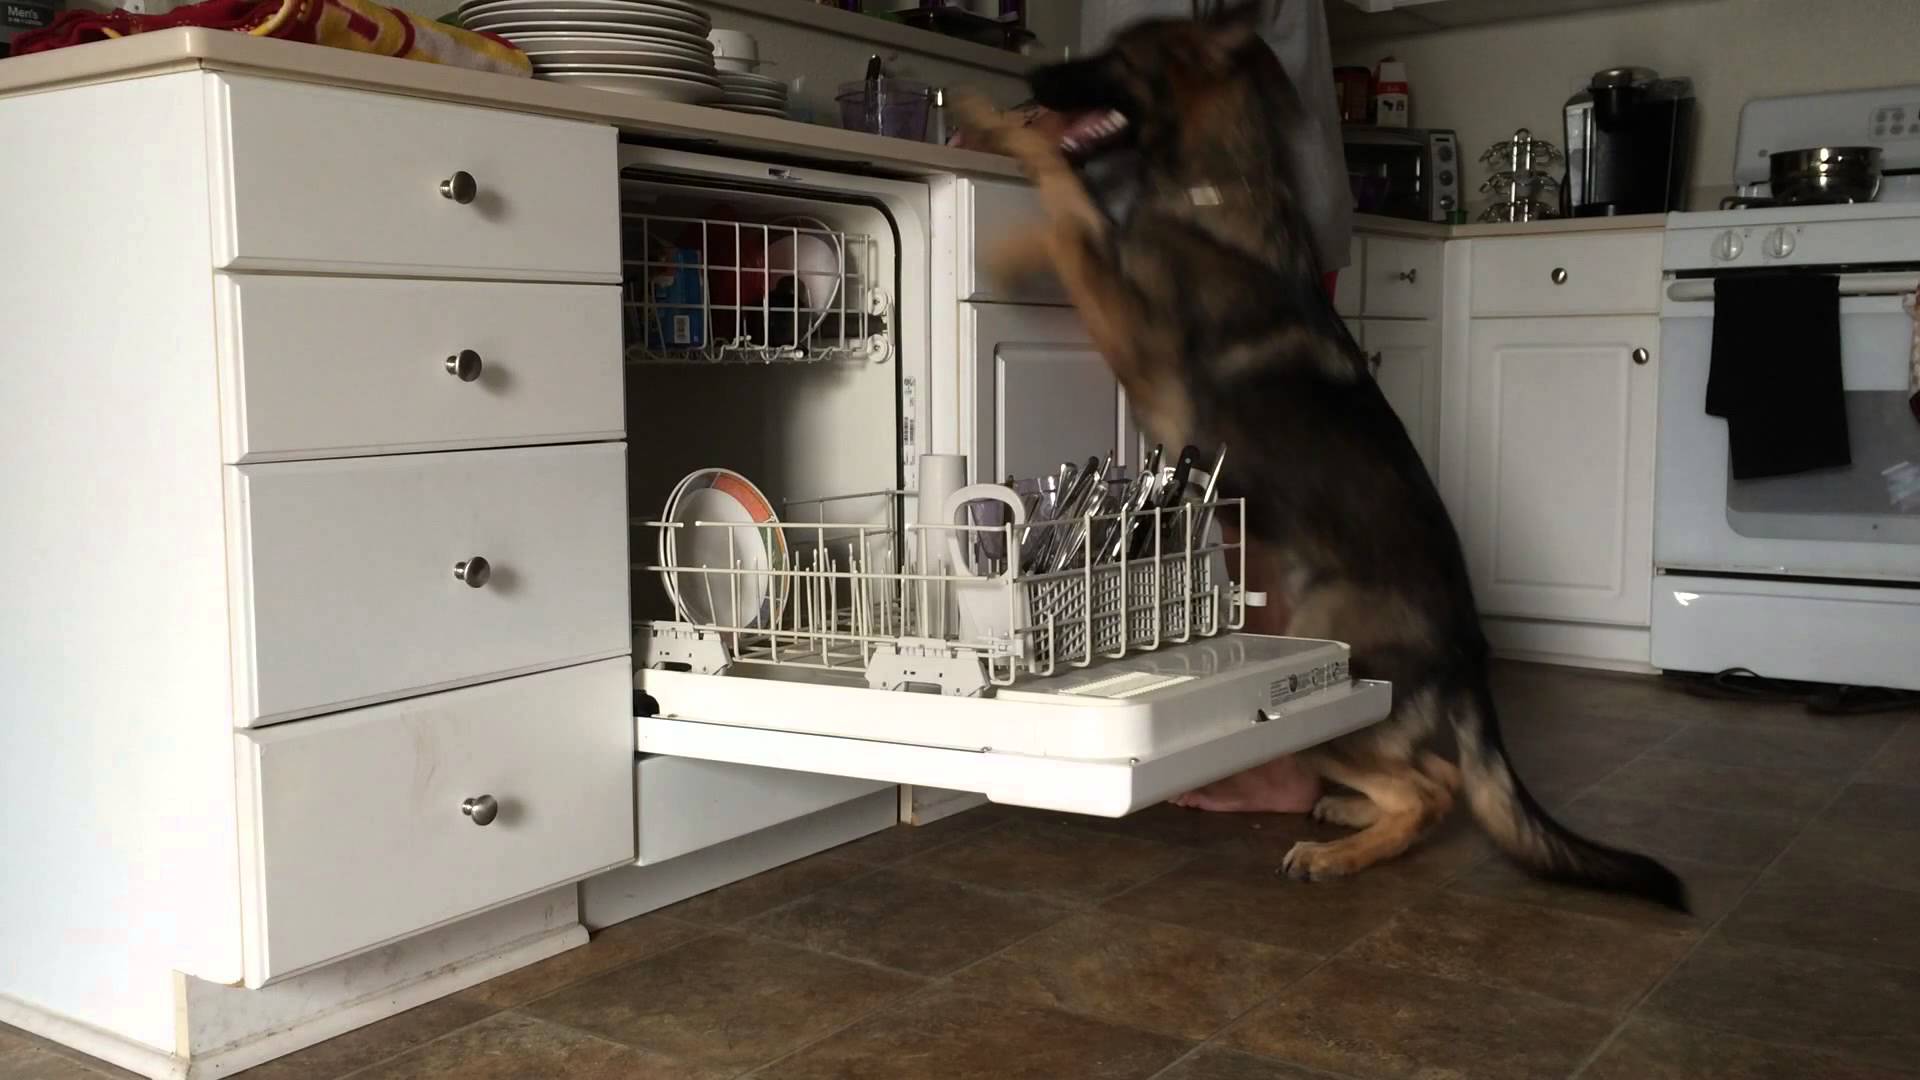 O cão que carrega a máquina de lavar loiça.